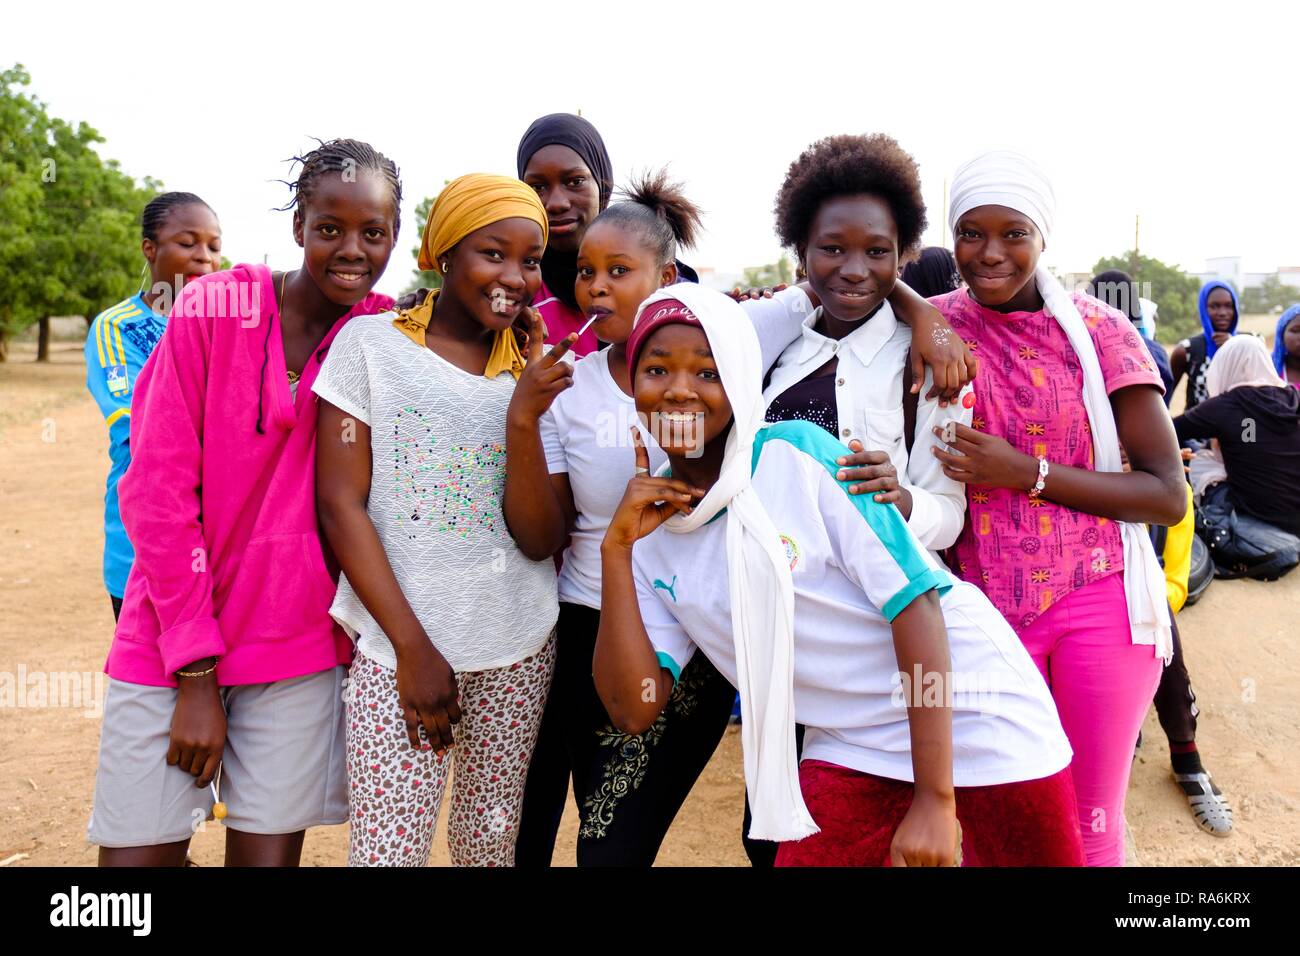 Groupe de jeunes filles sénégalaises, Dakar, Sénégal Banque D'Images